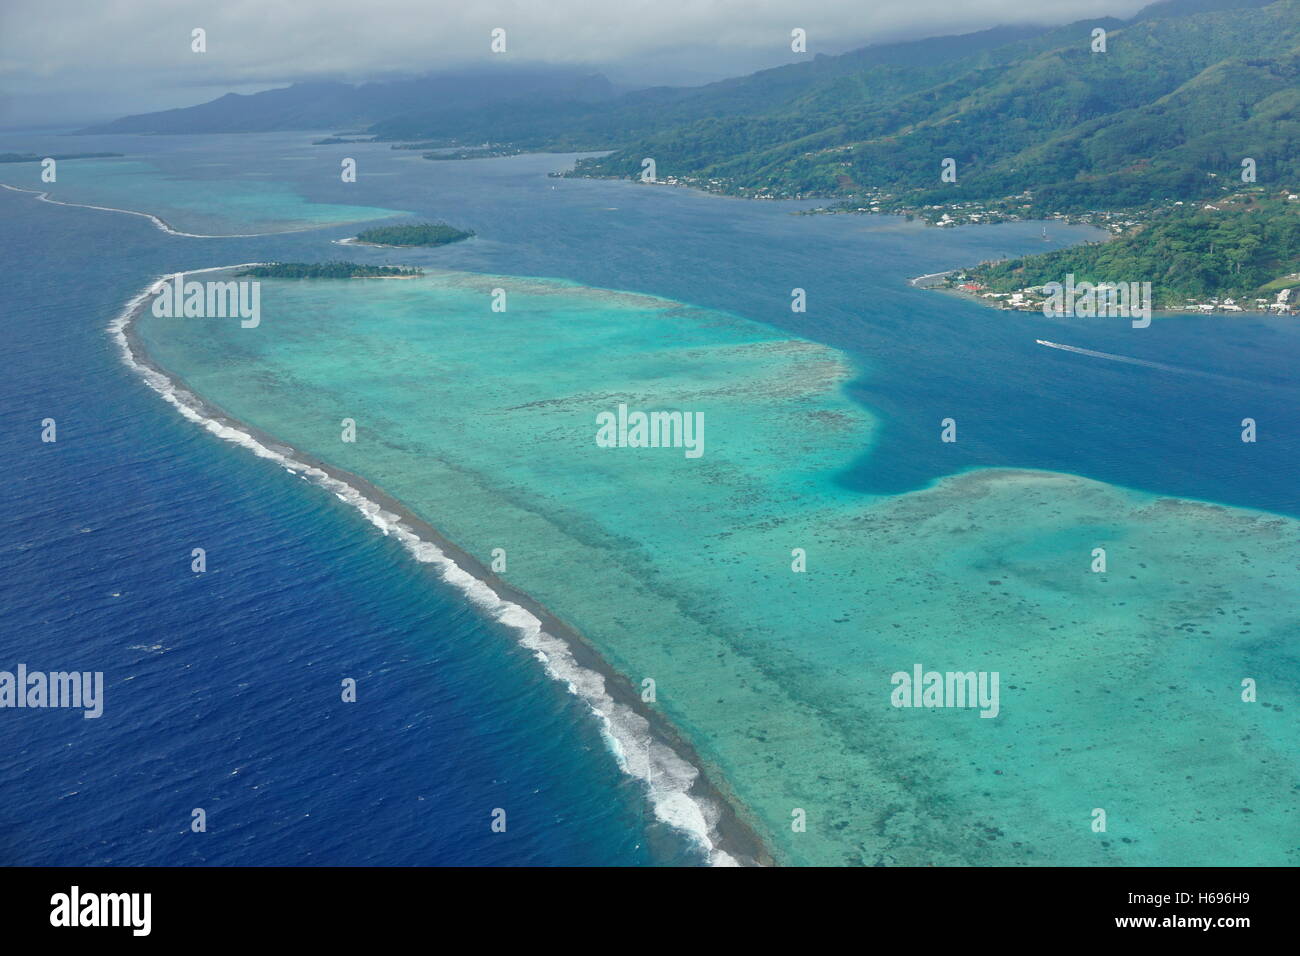 La laguna e la barriera corallina dell'Isola Raiatea, vista aerea, Oceano Pacifico del Sud, Isole della Società, Polinesia Francese Foto Stock